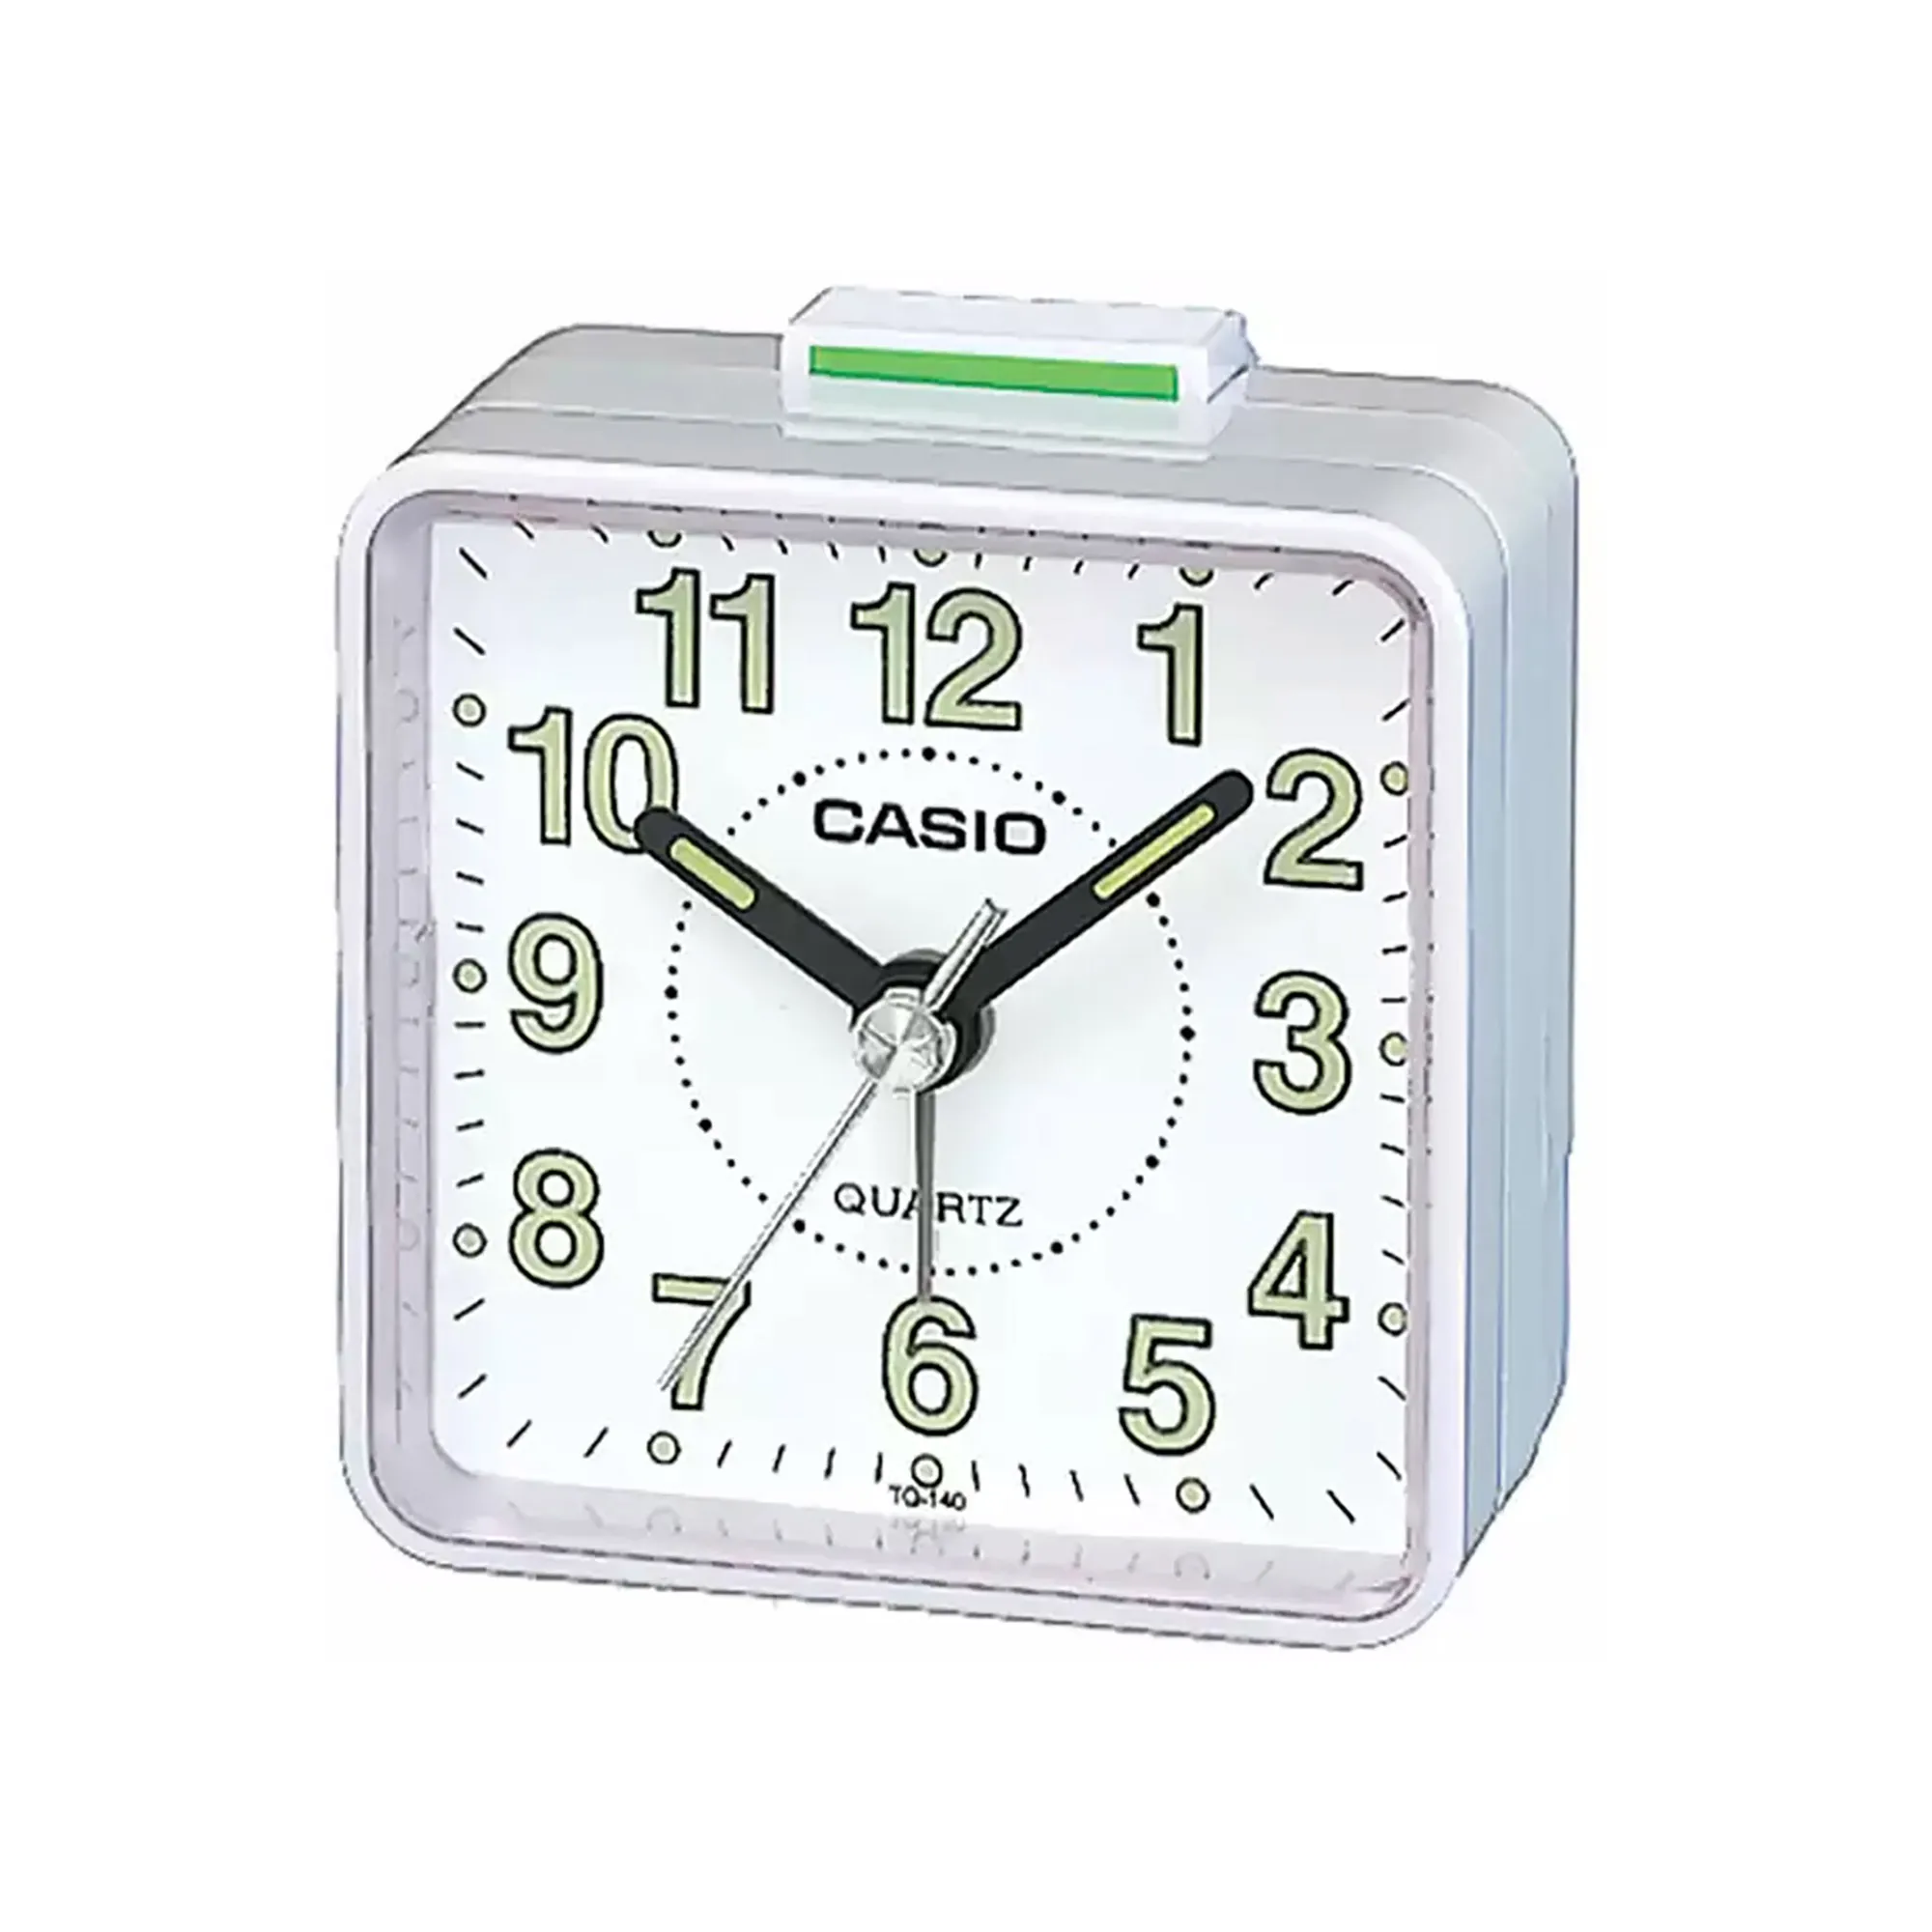 Orologio CASIO Clocks tq-140-7df